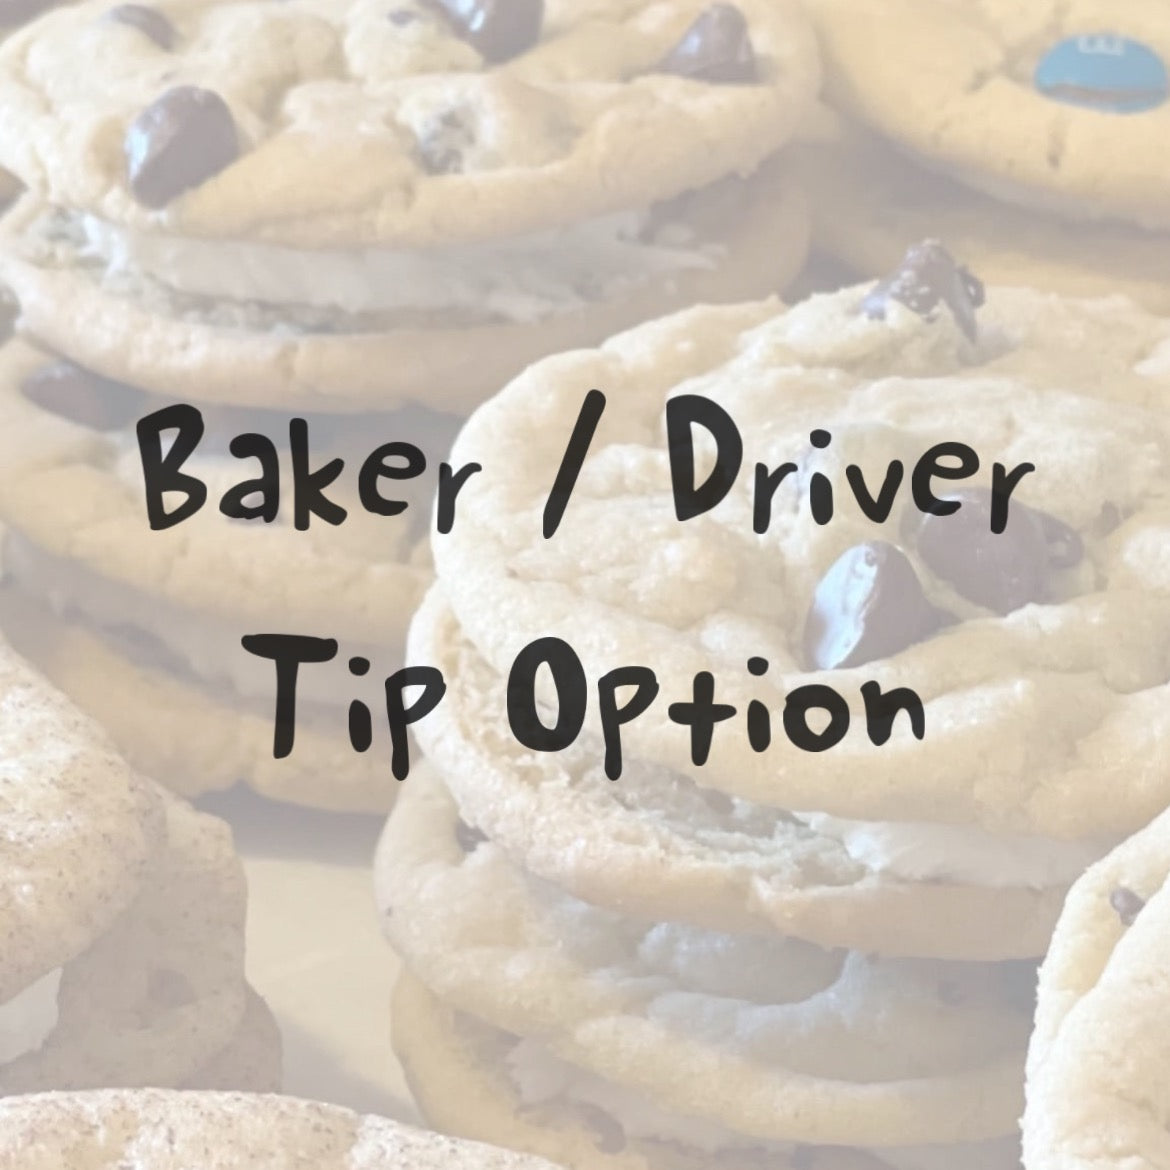 Baker / Driver Tip Option